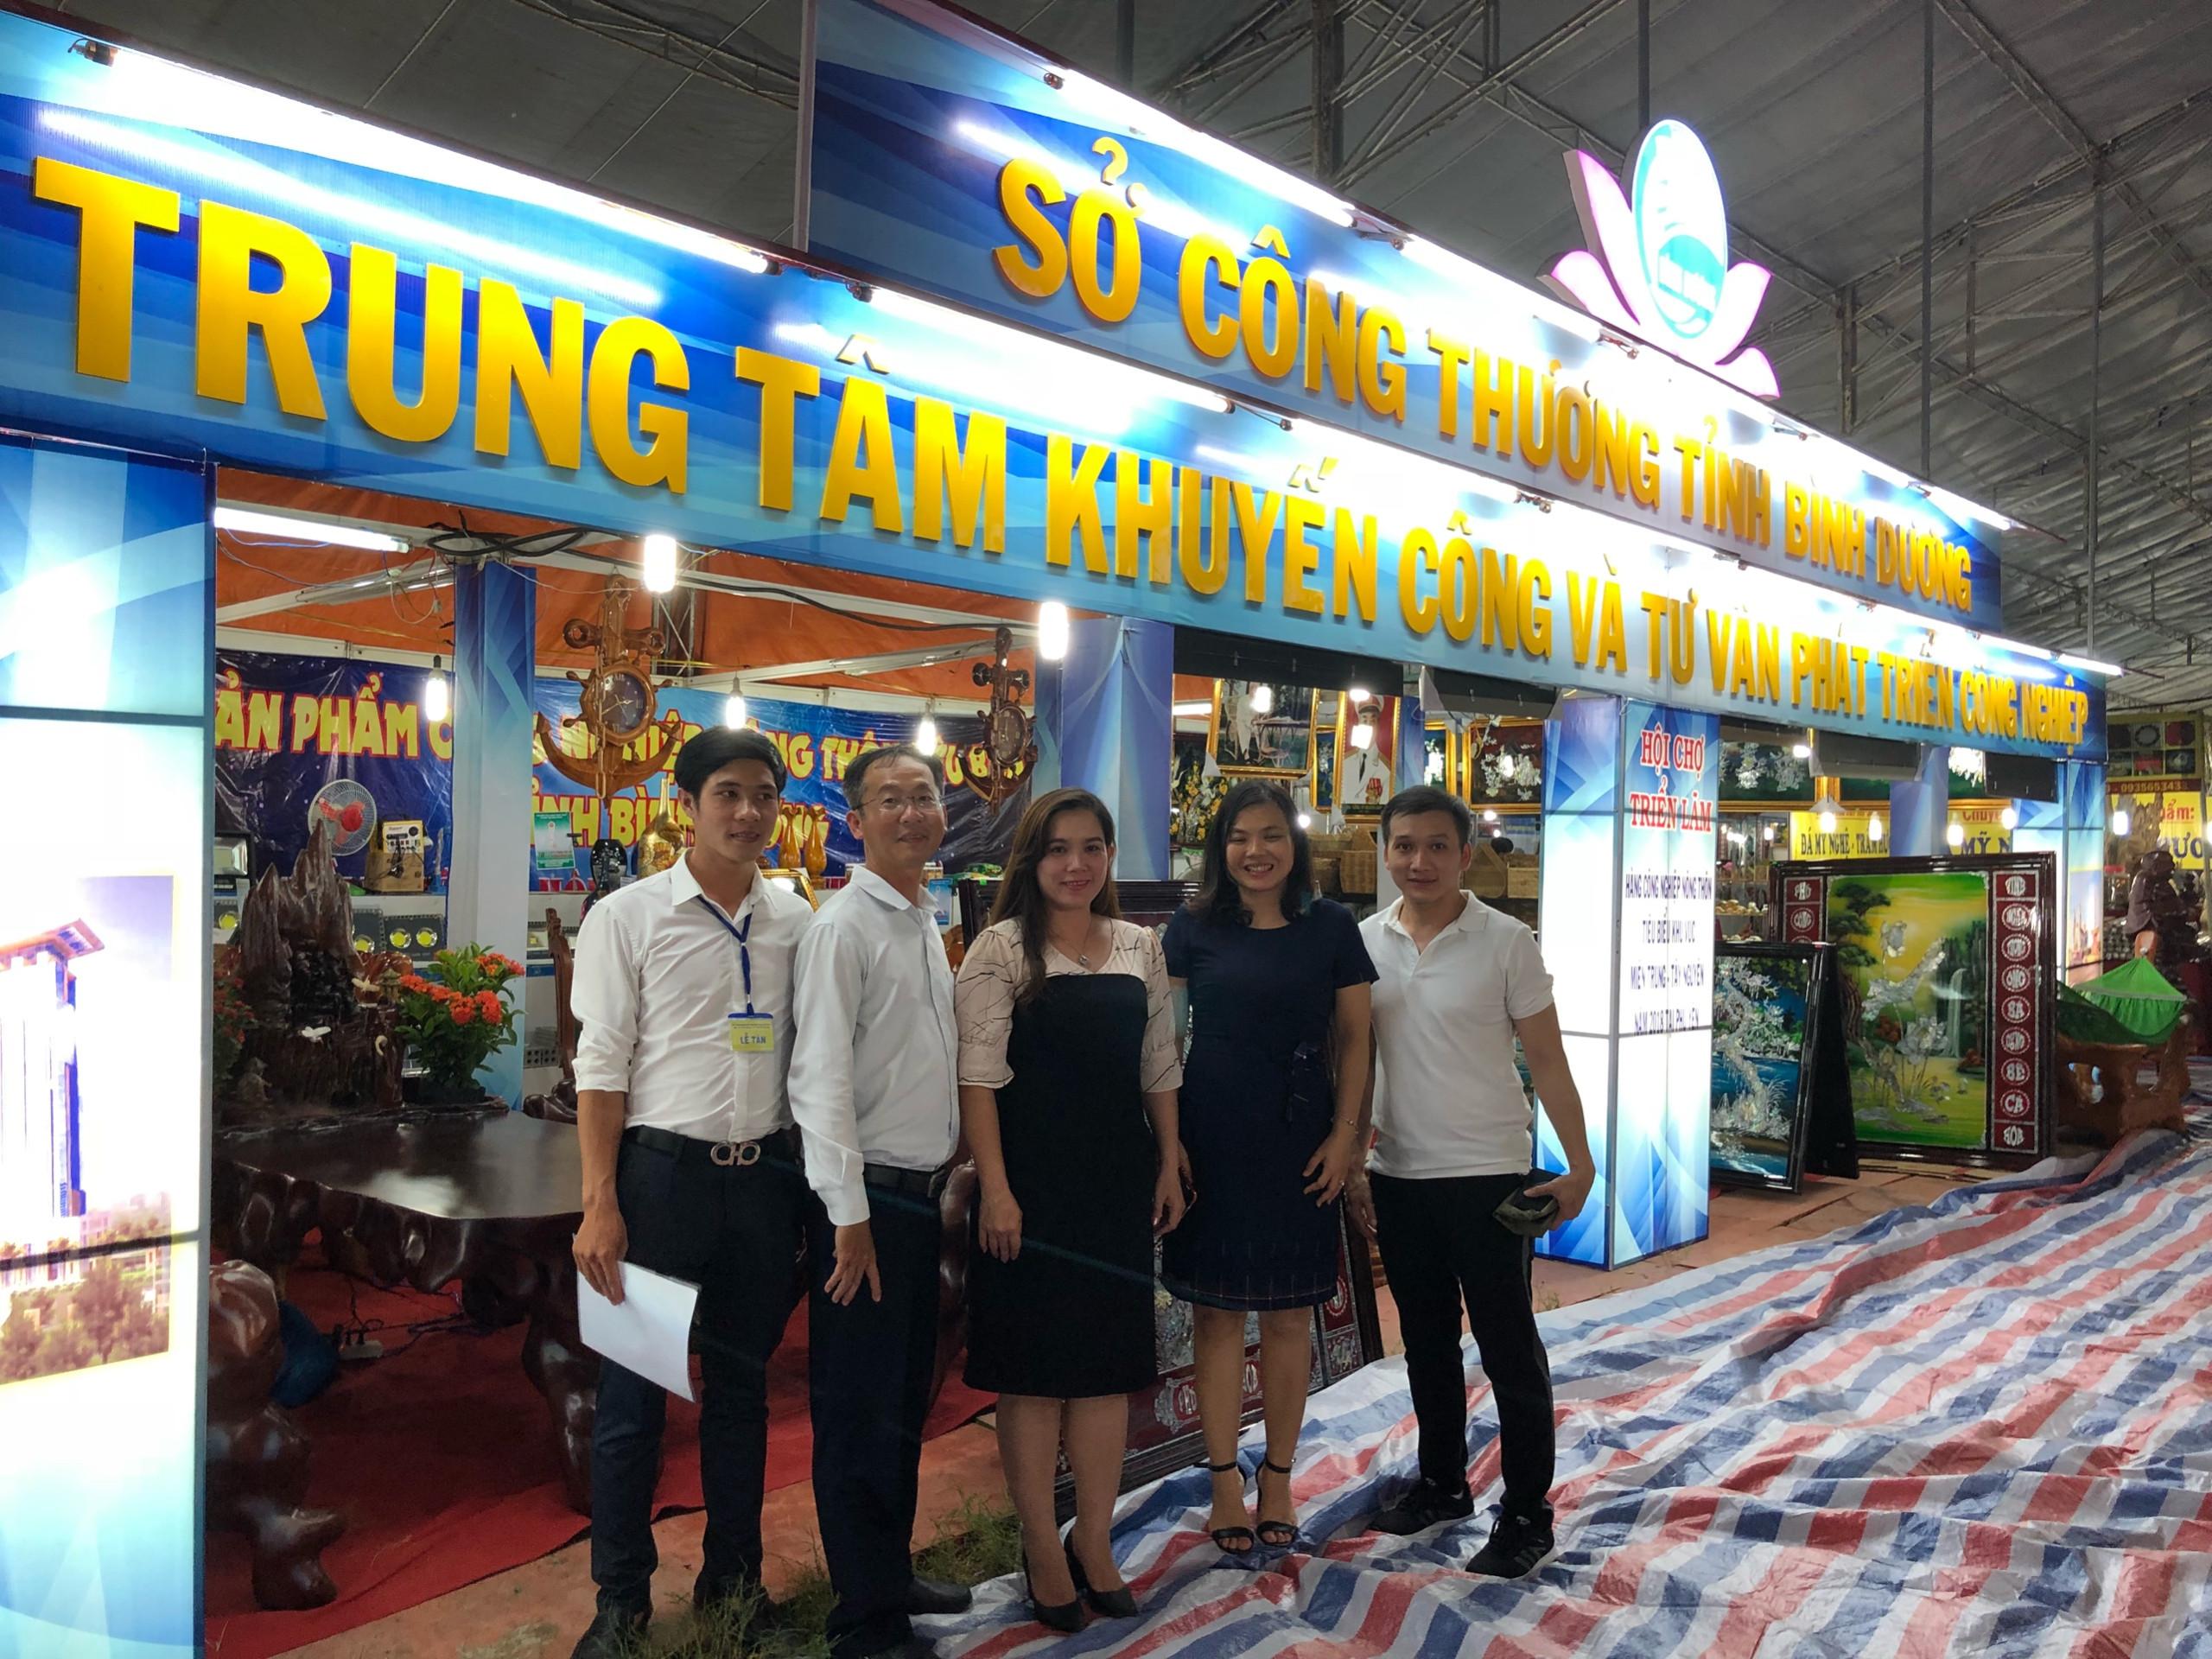 Bình Dương tham gia Hội chợ, Triển lãm hàng công nghiệp nông thôn tiêu biểu khu vực miền Trung – Tây Nguyên năm 2018 tại Phú Yên